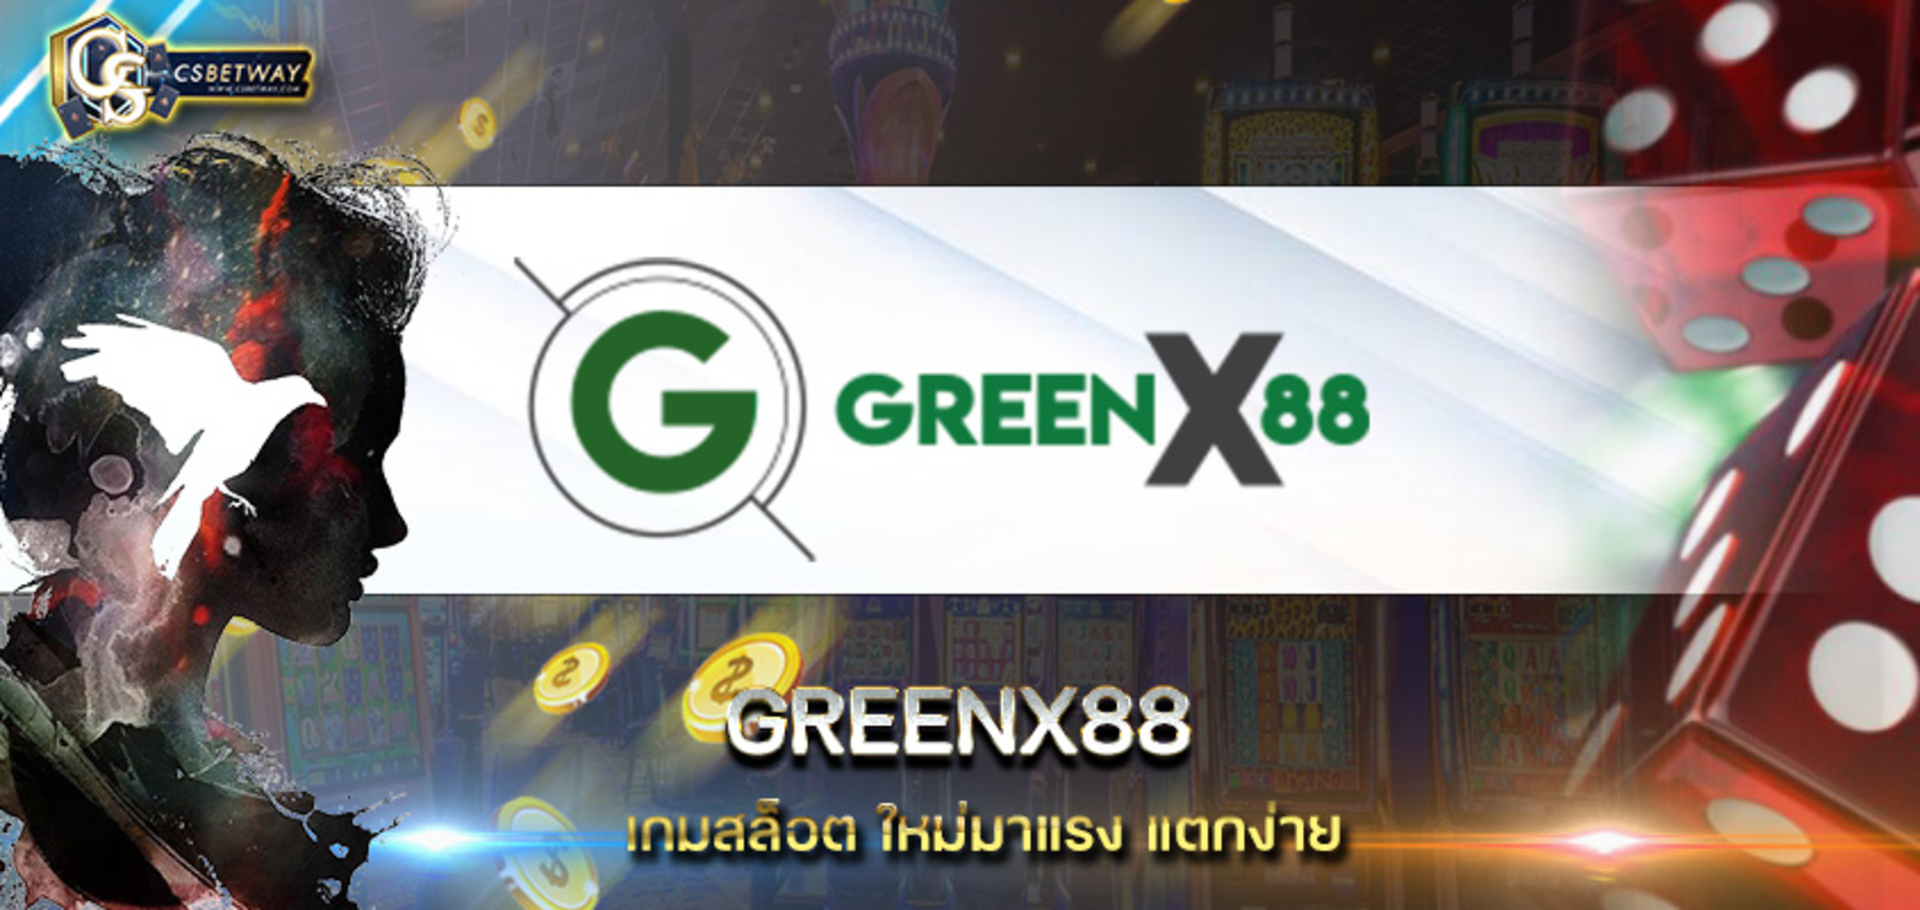 เว็บเดิมพันออนไลน์ greenx88 สุดยอดเกมคุณภาพ รูปแบบทันสมัย greenx88 เดิมพันออนไลน์ 24 ชั่วโมง